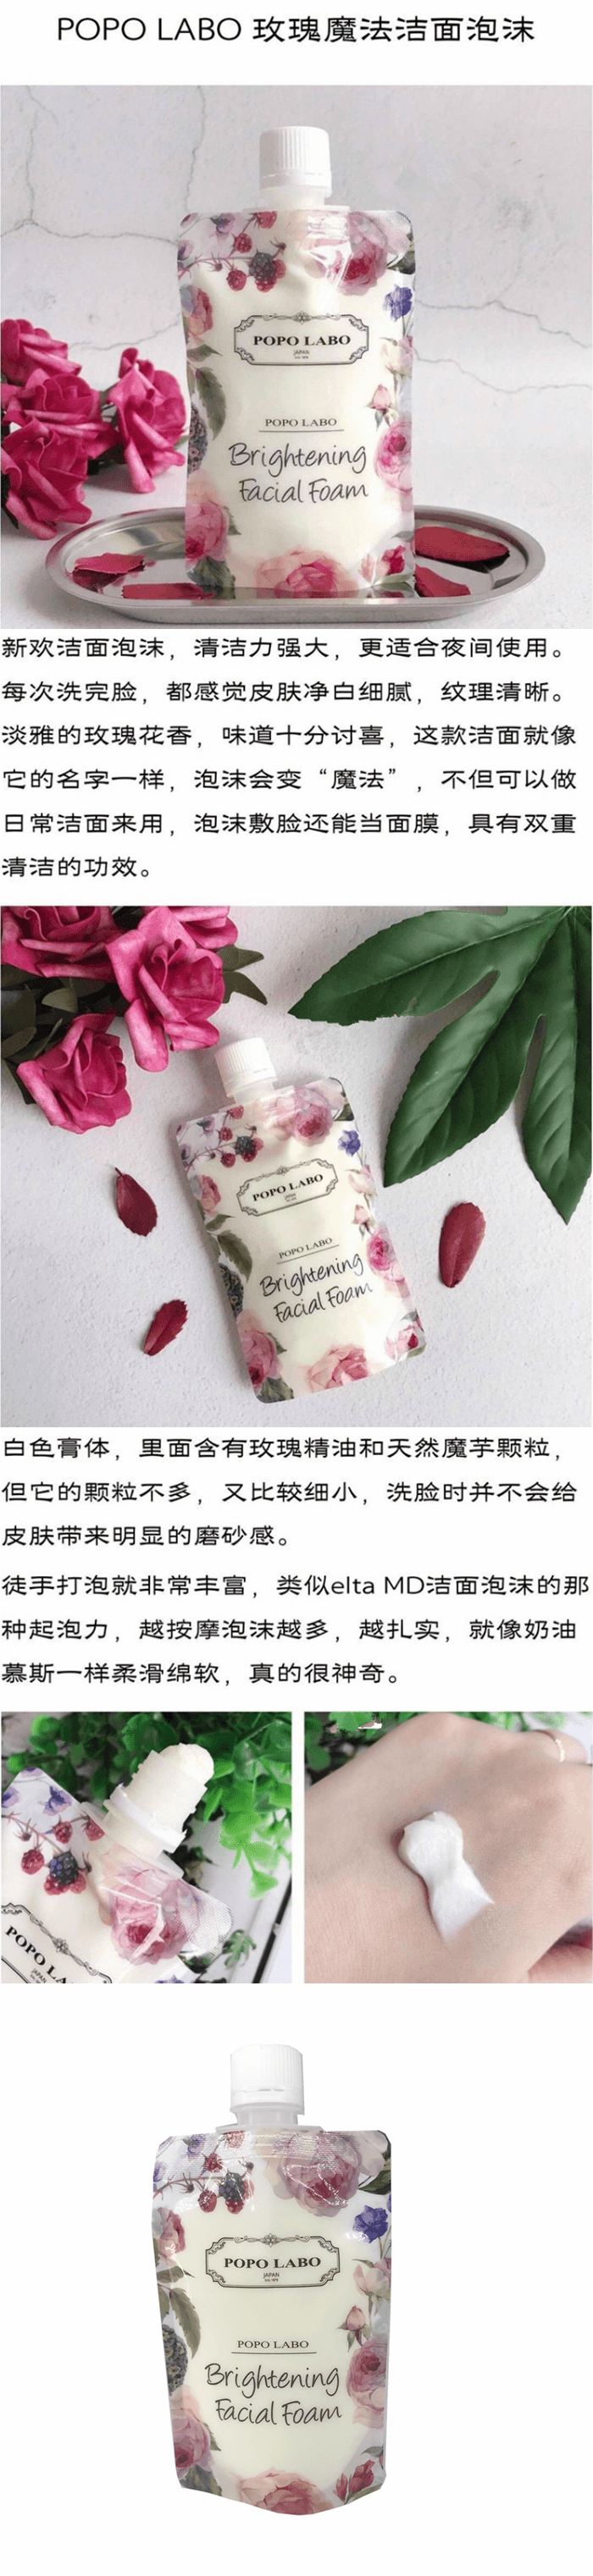 【特价回馈】【日本直邮】日本POPO LABO玫瑰保湿补水美白泡沫洁面120g